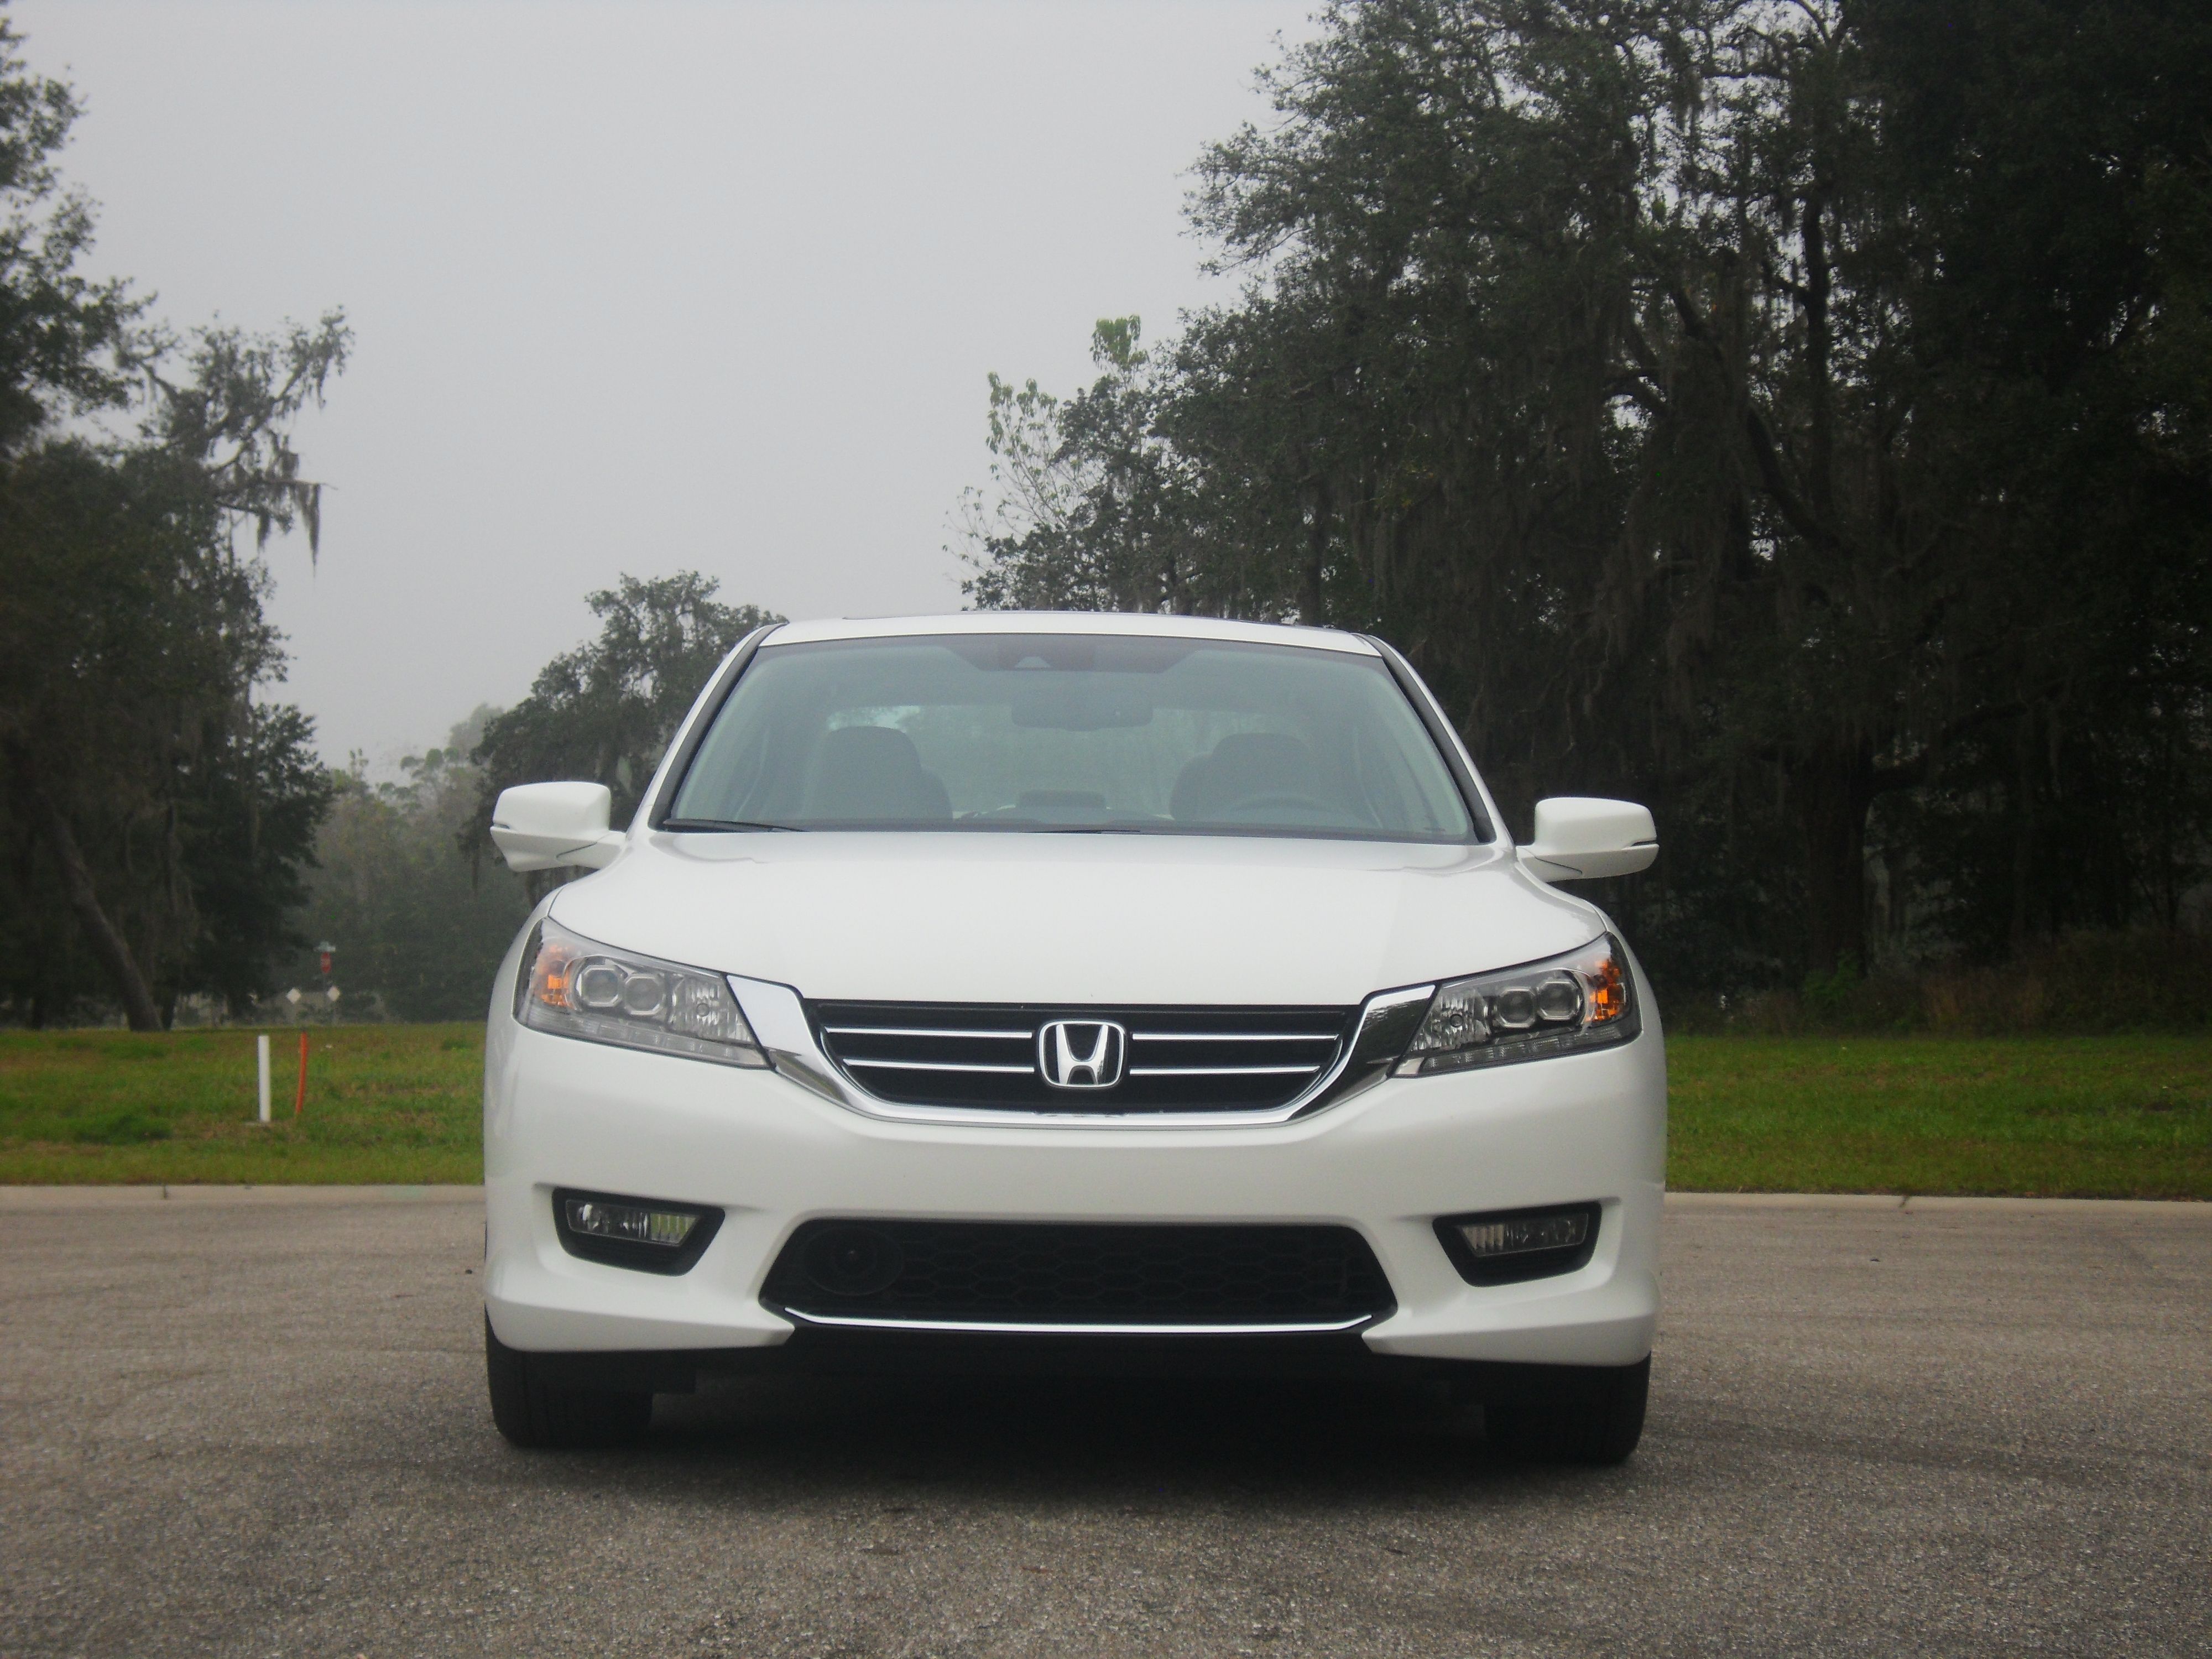 2014 Honda Accord Touring - Driven